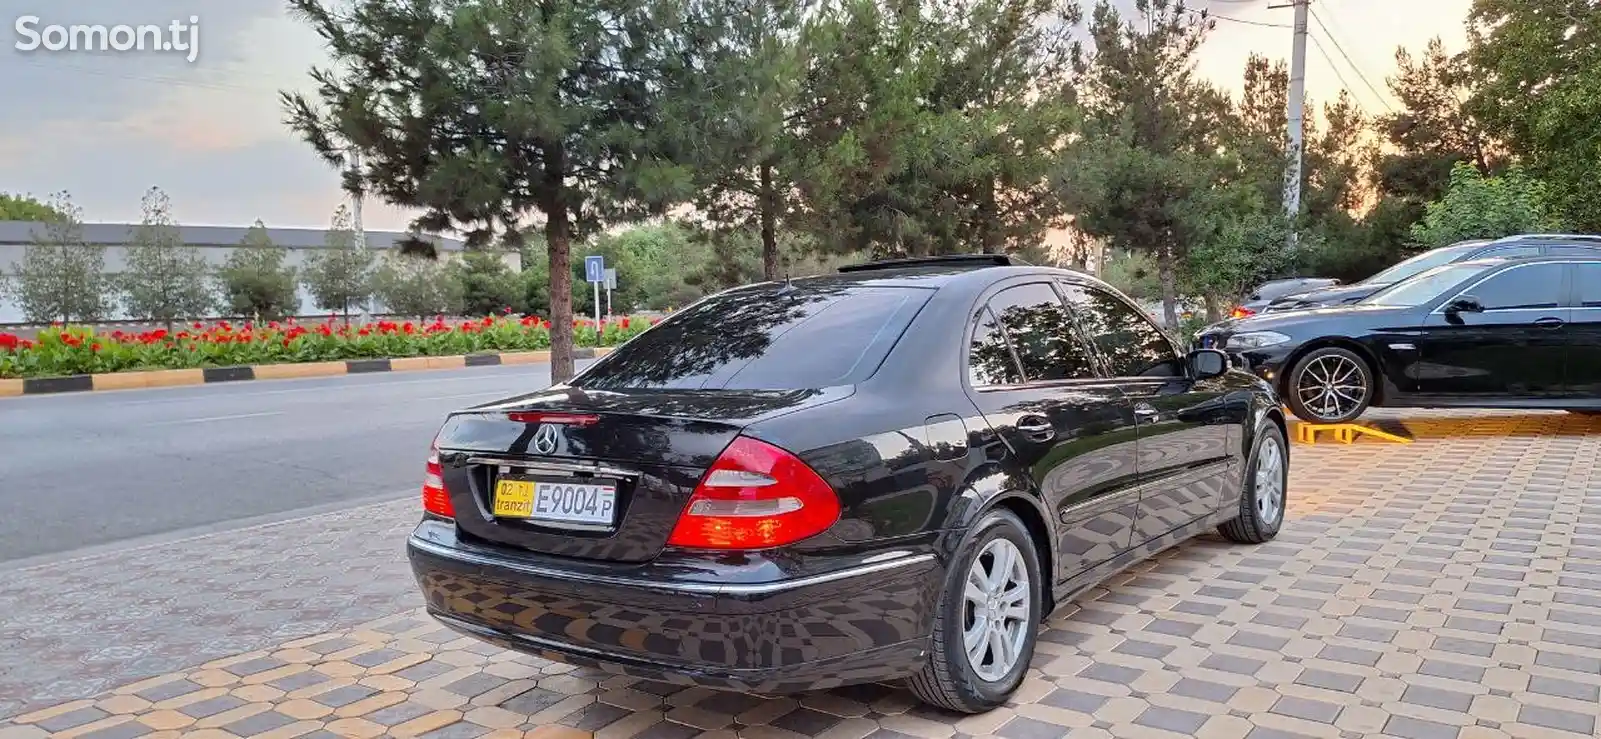 Mercedes-Benz E class, 2002-3